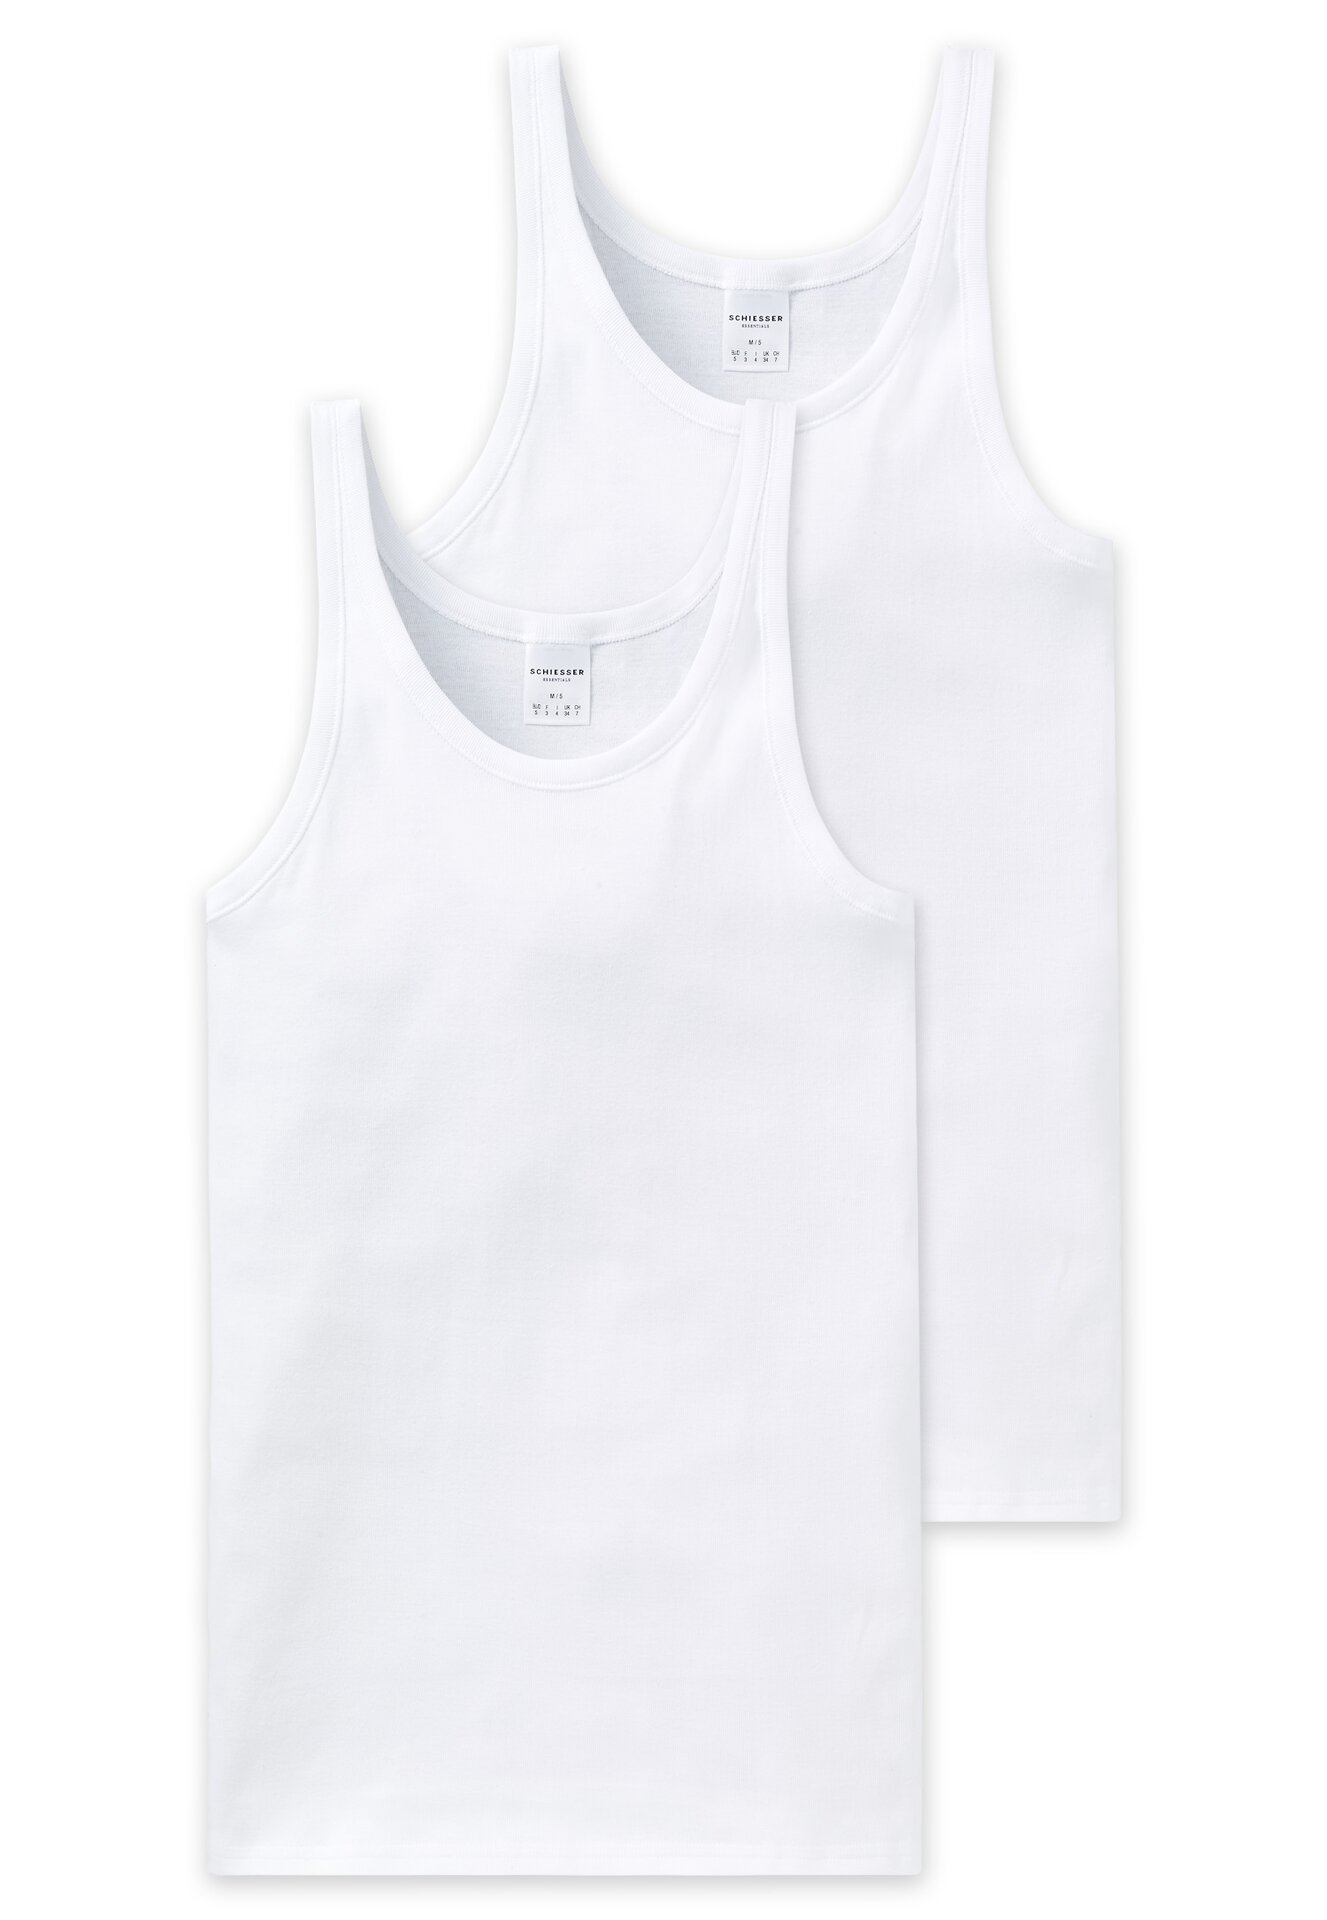 2er-Pack Schiesser Essentials Cotton Feinripp Herren Shirt